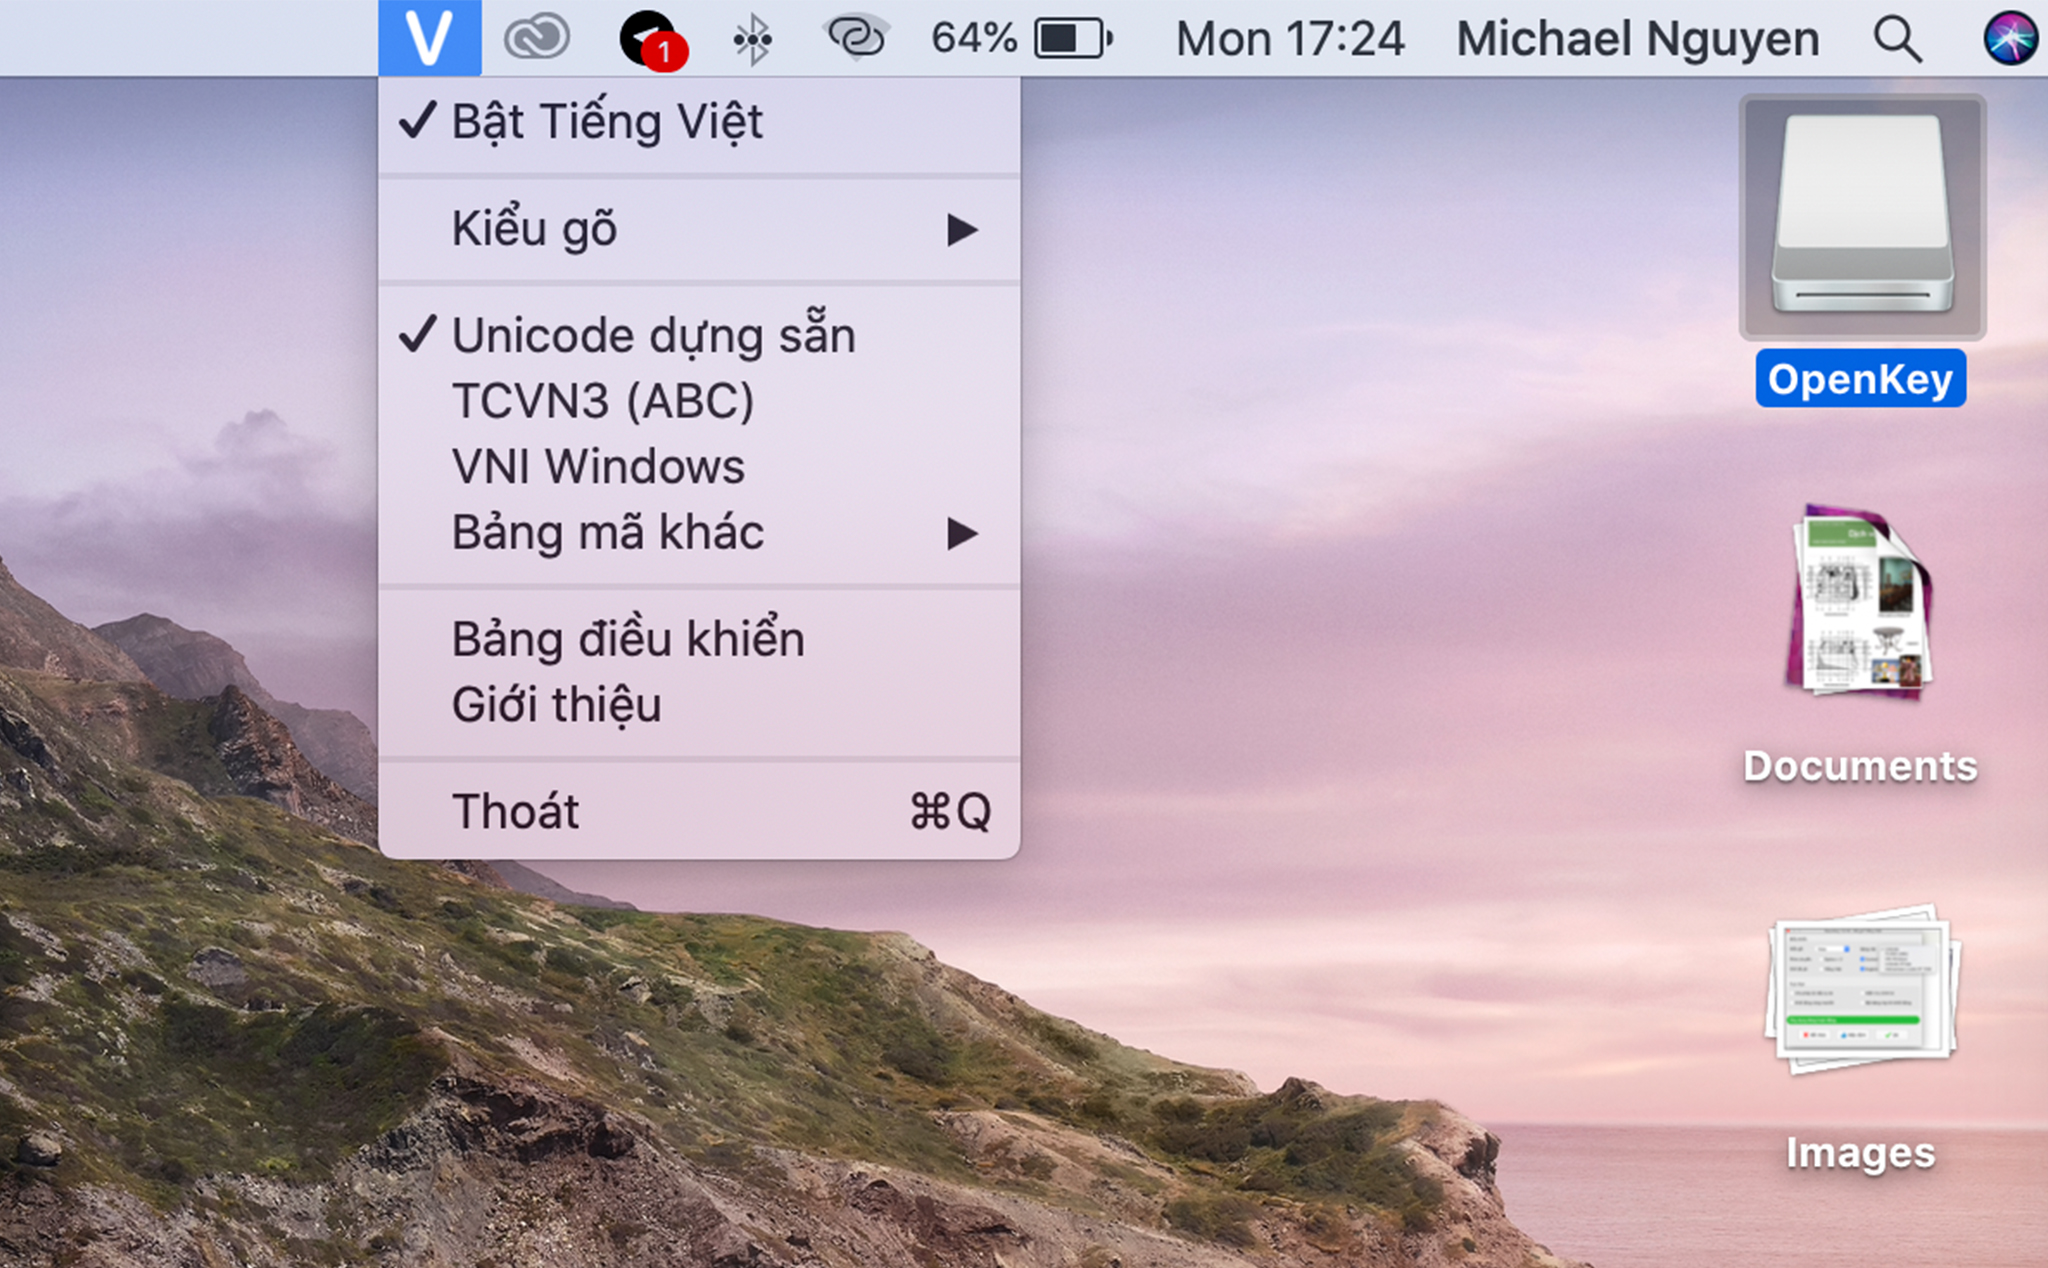 OpenKey: Bộ gõ Tiếng Việt cho macOS, tốt hơn bộ gõ mặc định